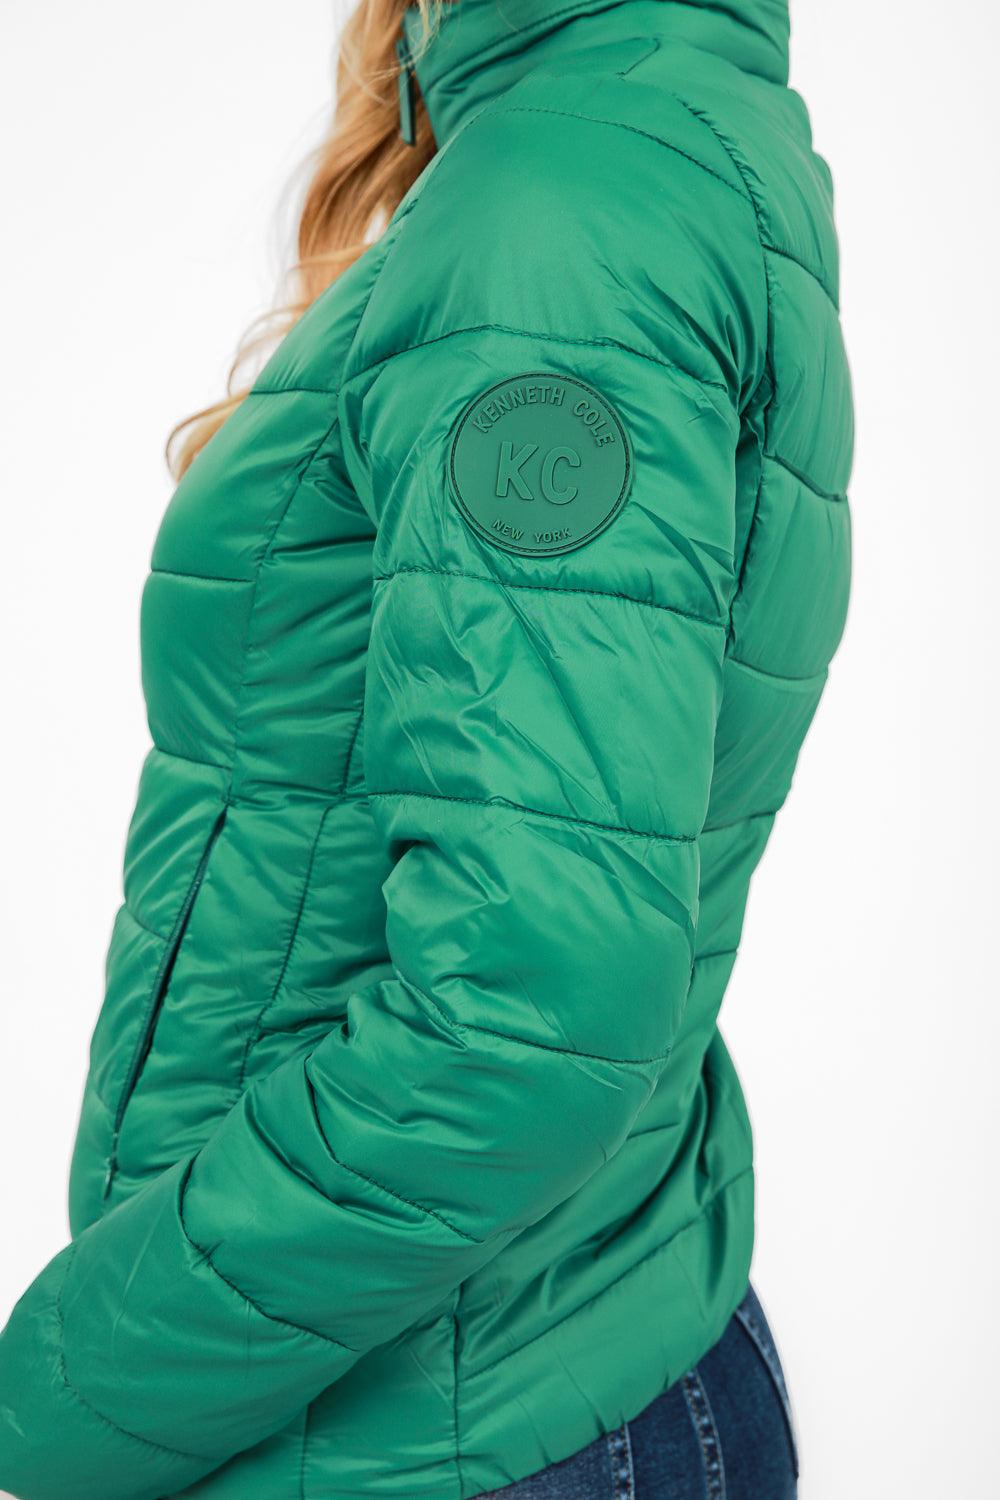 KENNETH COLE - מעיל ניילון לאישה עם קפלים בצבע ירוק - MASHBIR//365